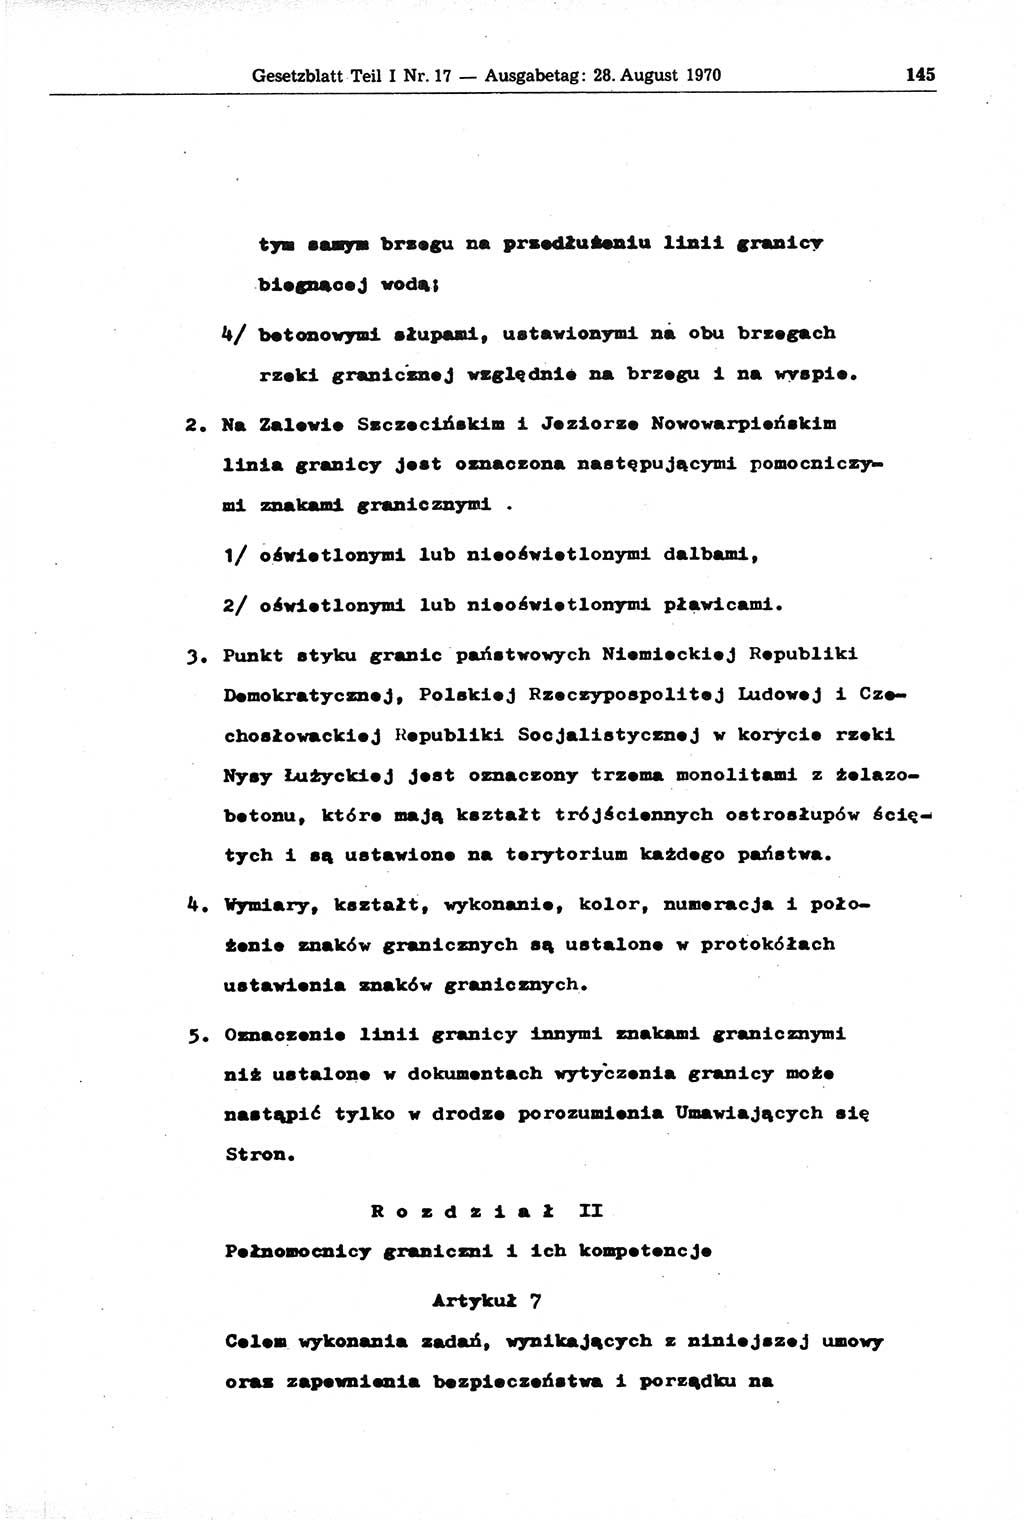 Gesetzblatt (GBl.) der Deutschen Demokratischen Republik (DDR) Teil Ⅰ 1970, Seite 145 (GBl. DDR Ⅰ 1970, S. 145)